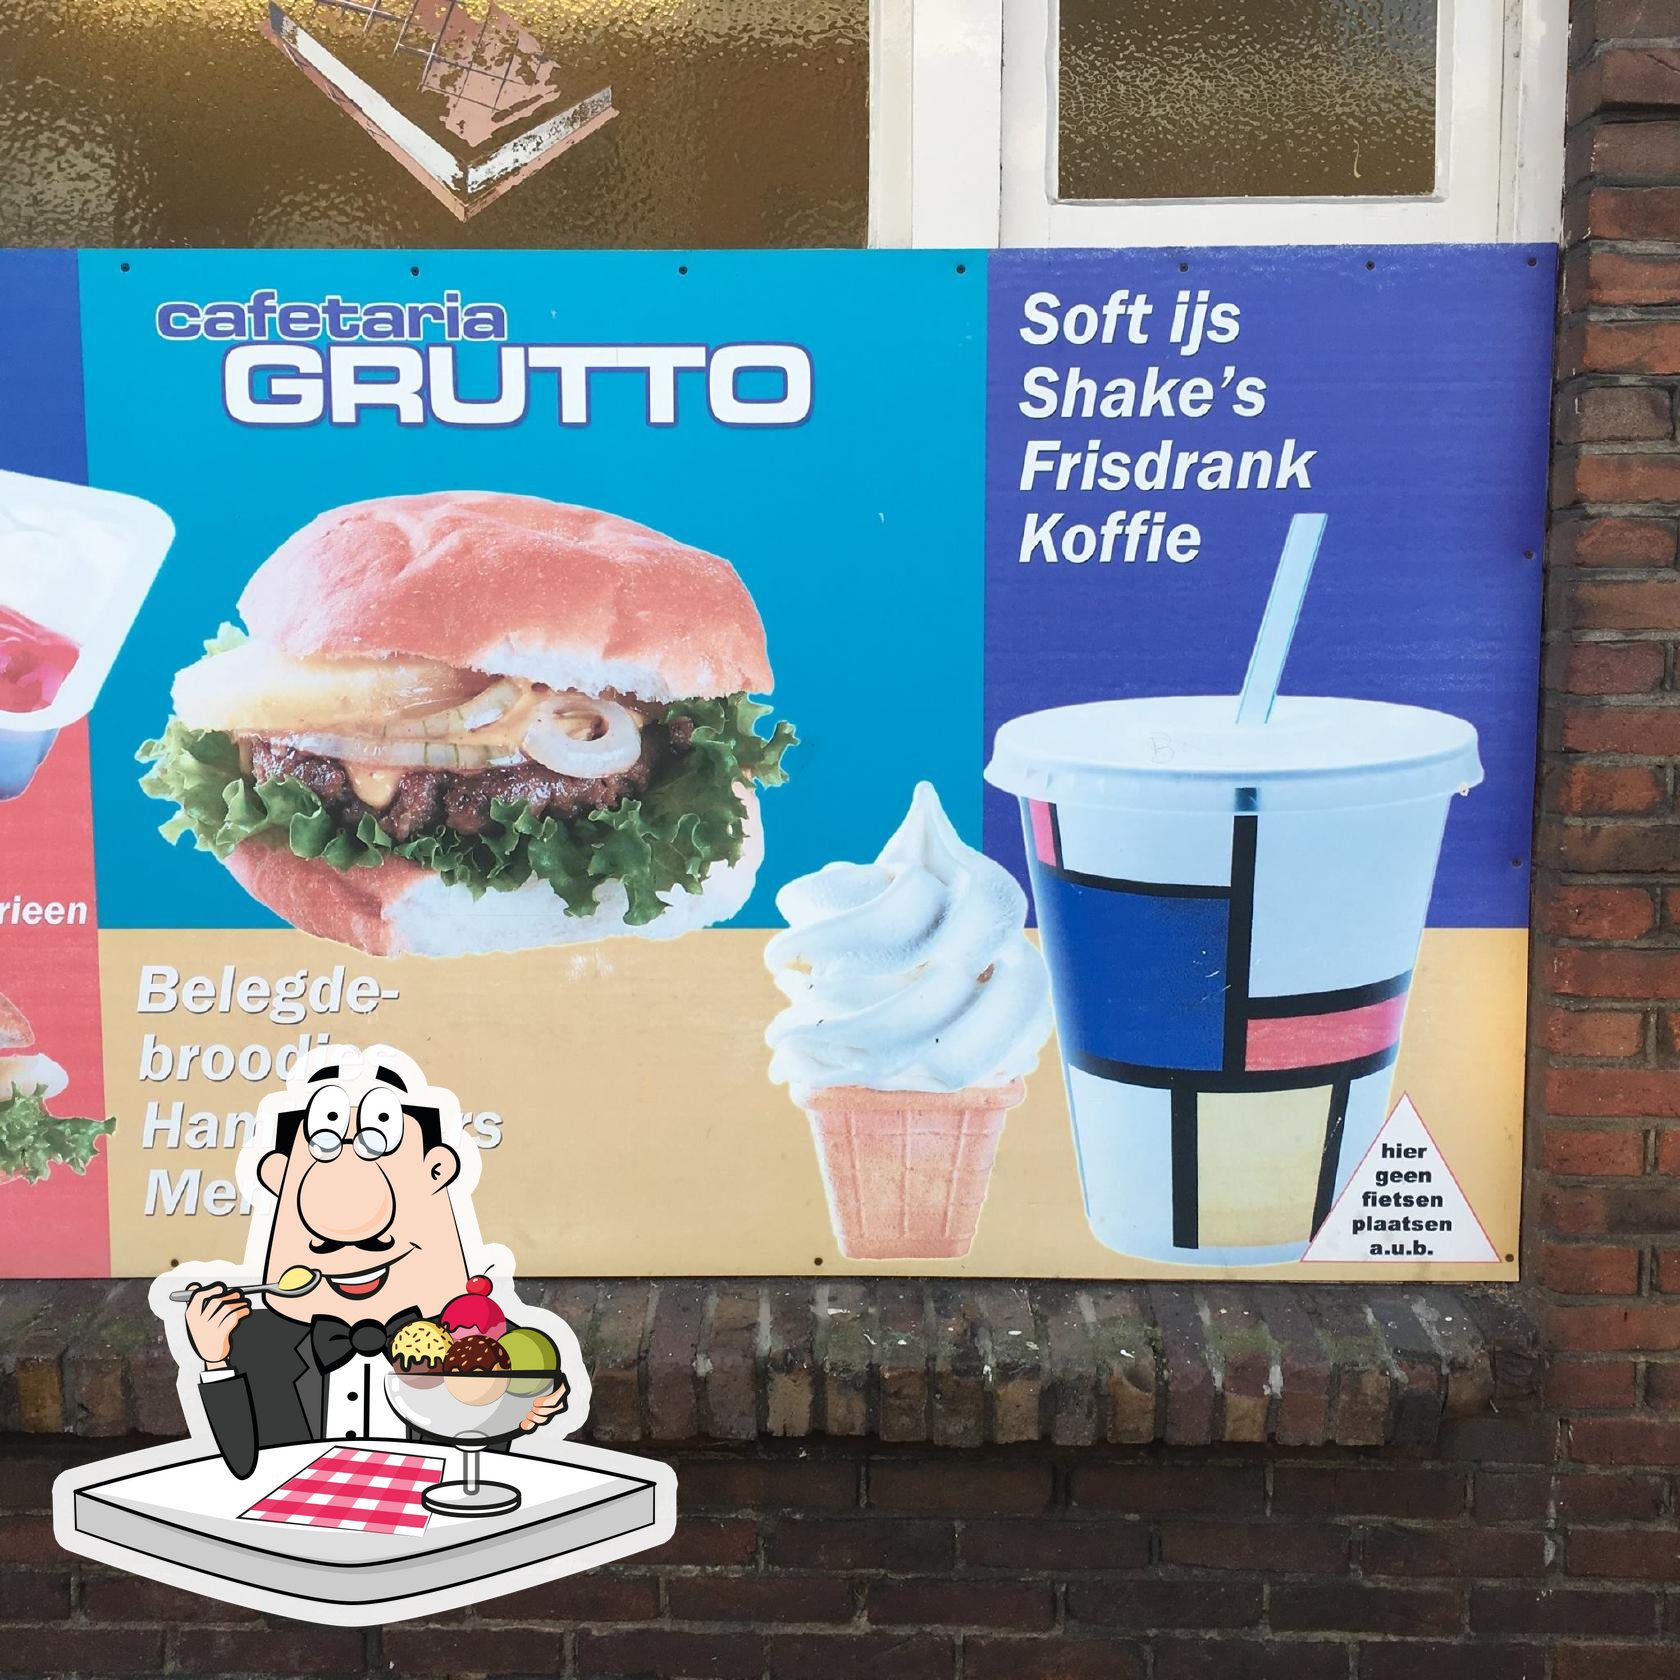 Snackbar Grutto, Utrecht - Restaurant reviews